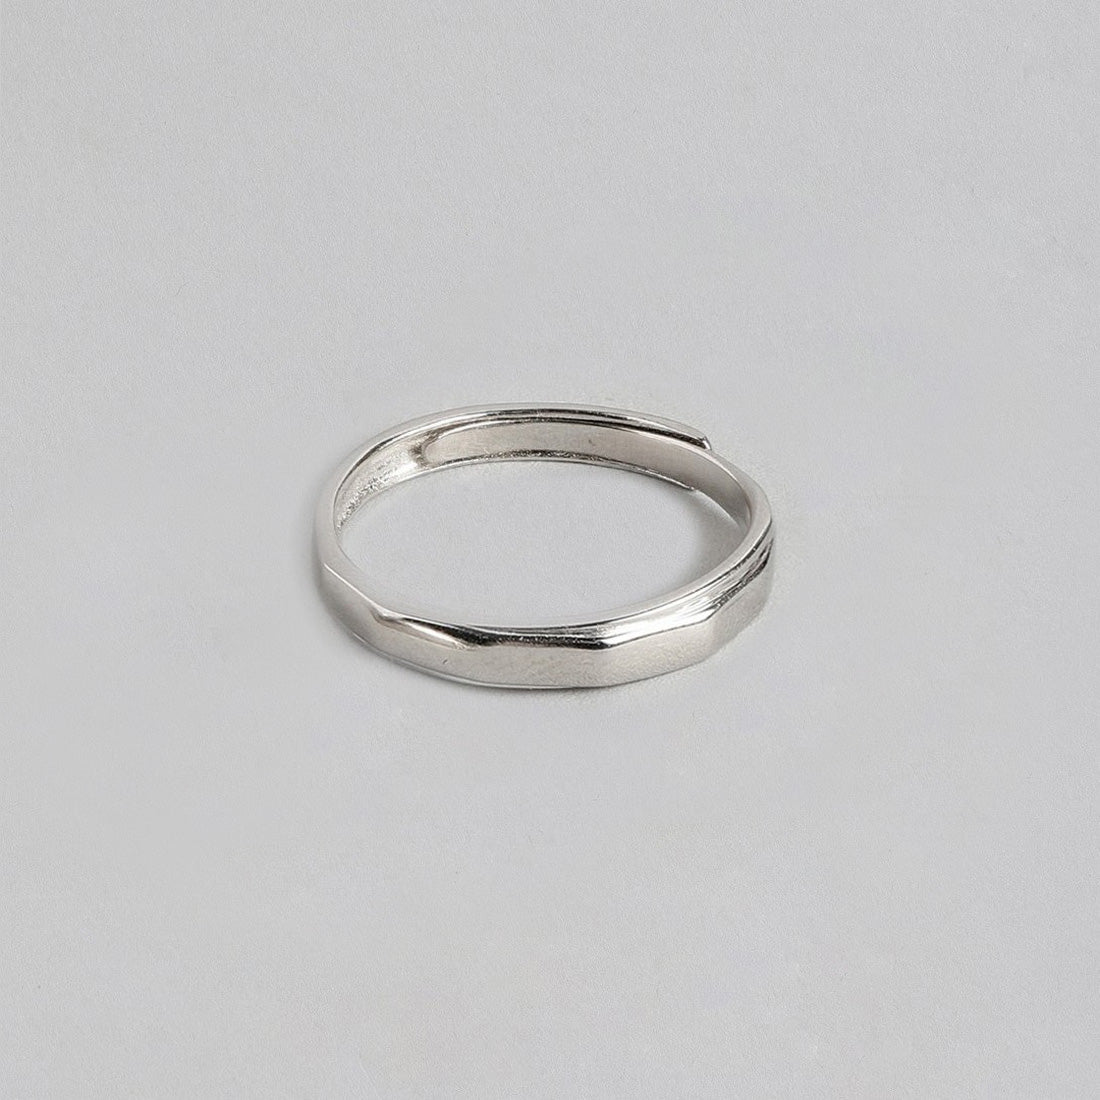 Cohort Band 925 Sterling Silver Ring for Him (Adjustable)